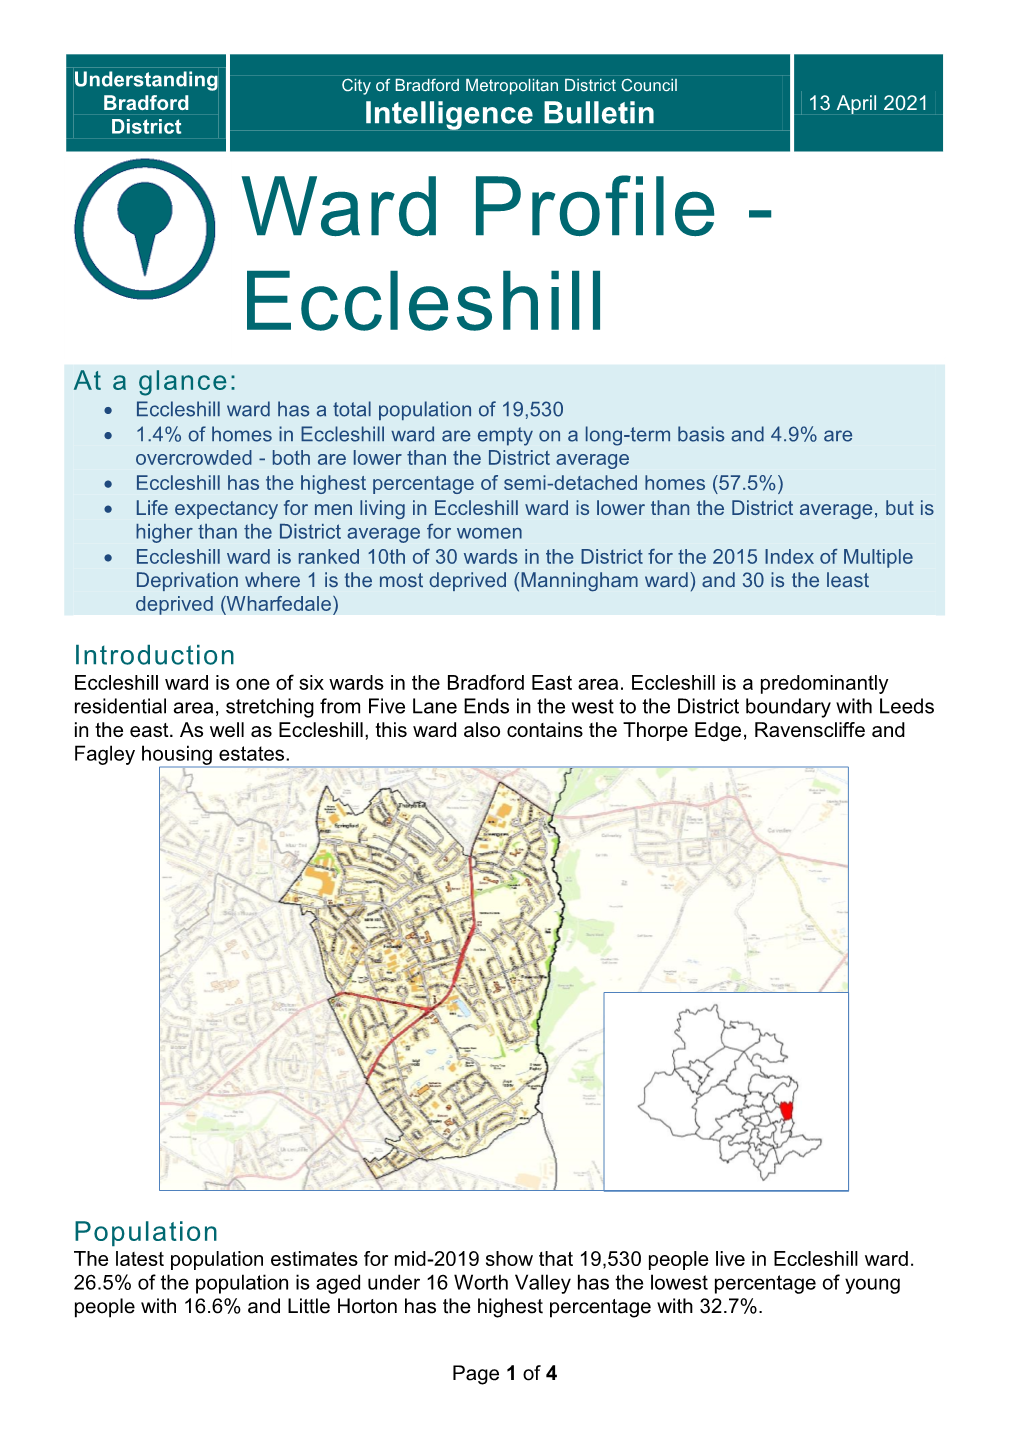 Ward Profile - Eccleshill